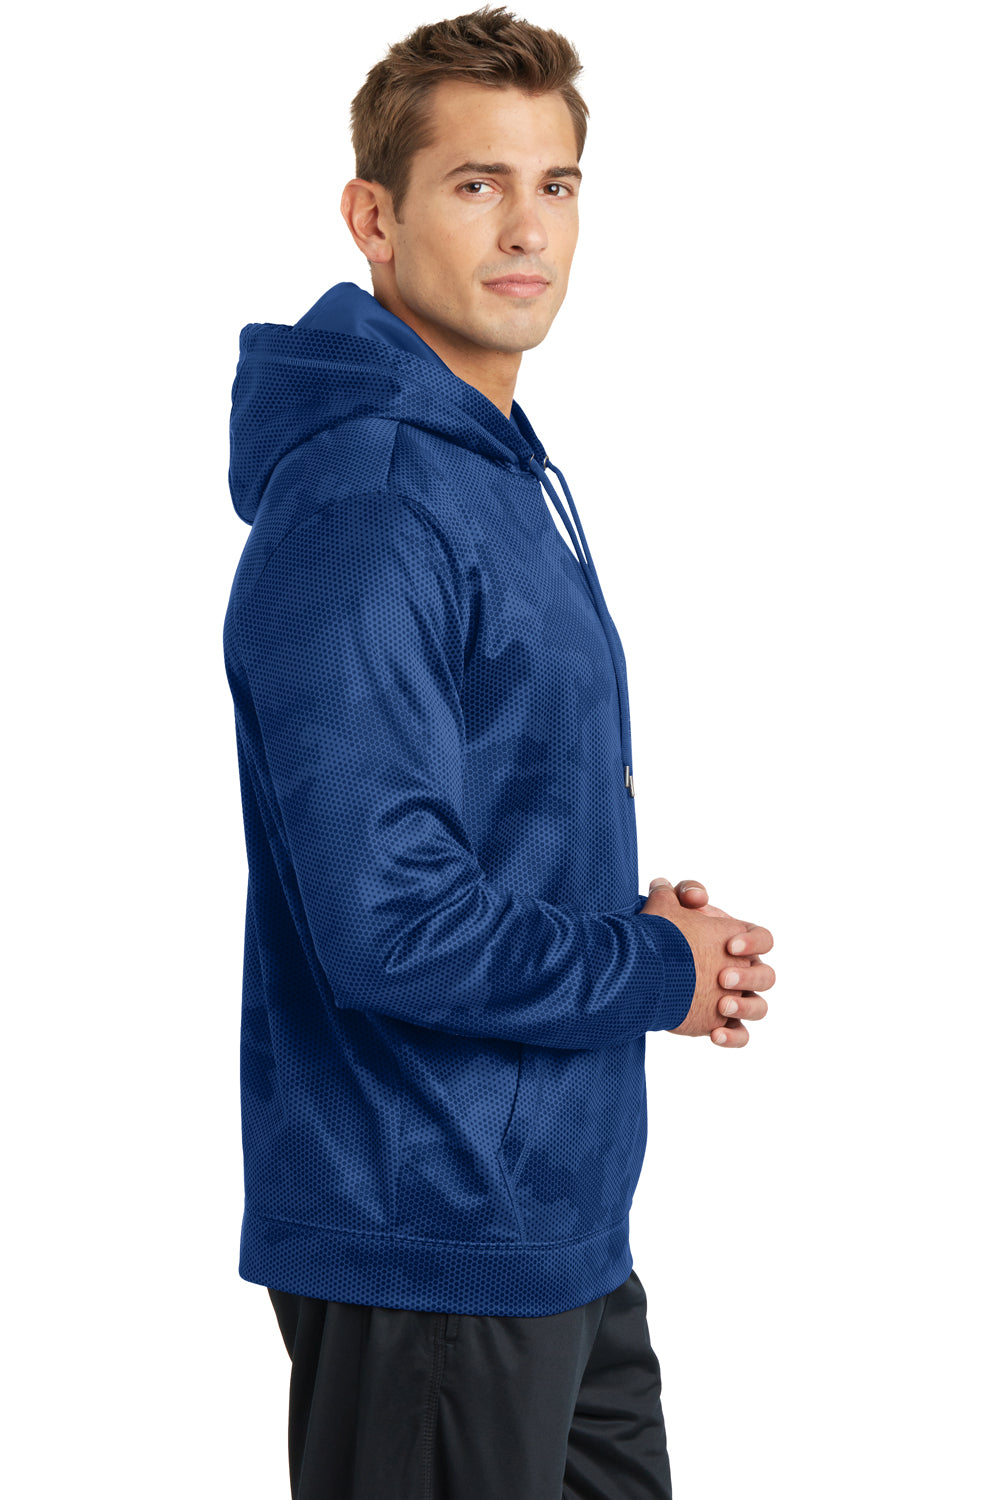 Sport-Tek ST240 Mens Sport-Wick CamoHex Moisture Wicking Fleece Hooded Sweatshirt Hoodie Royal Blue Side